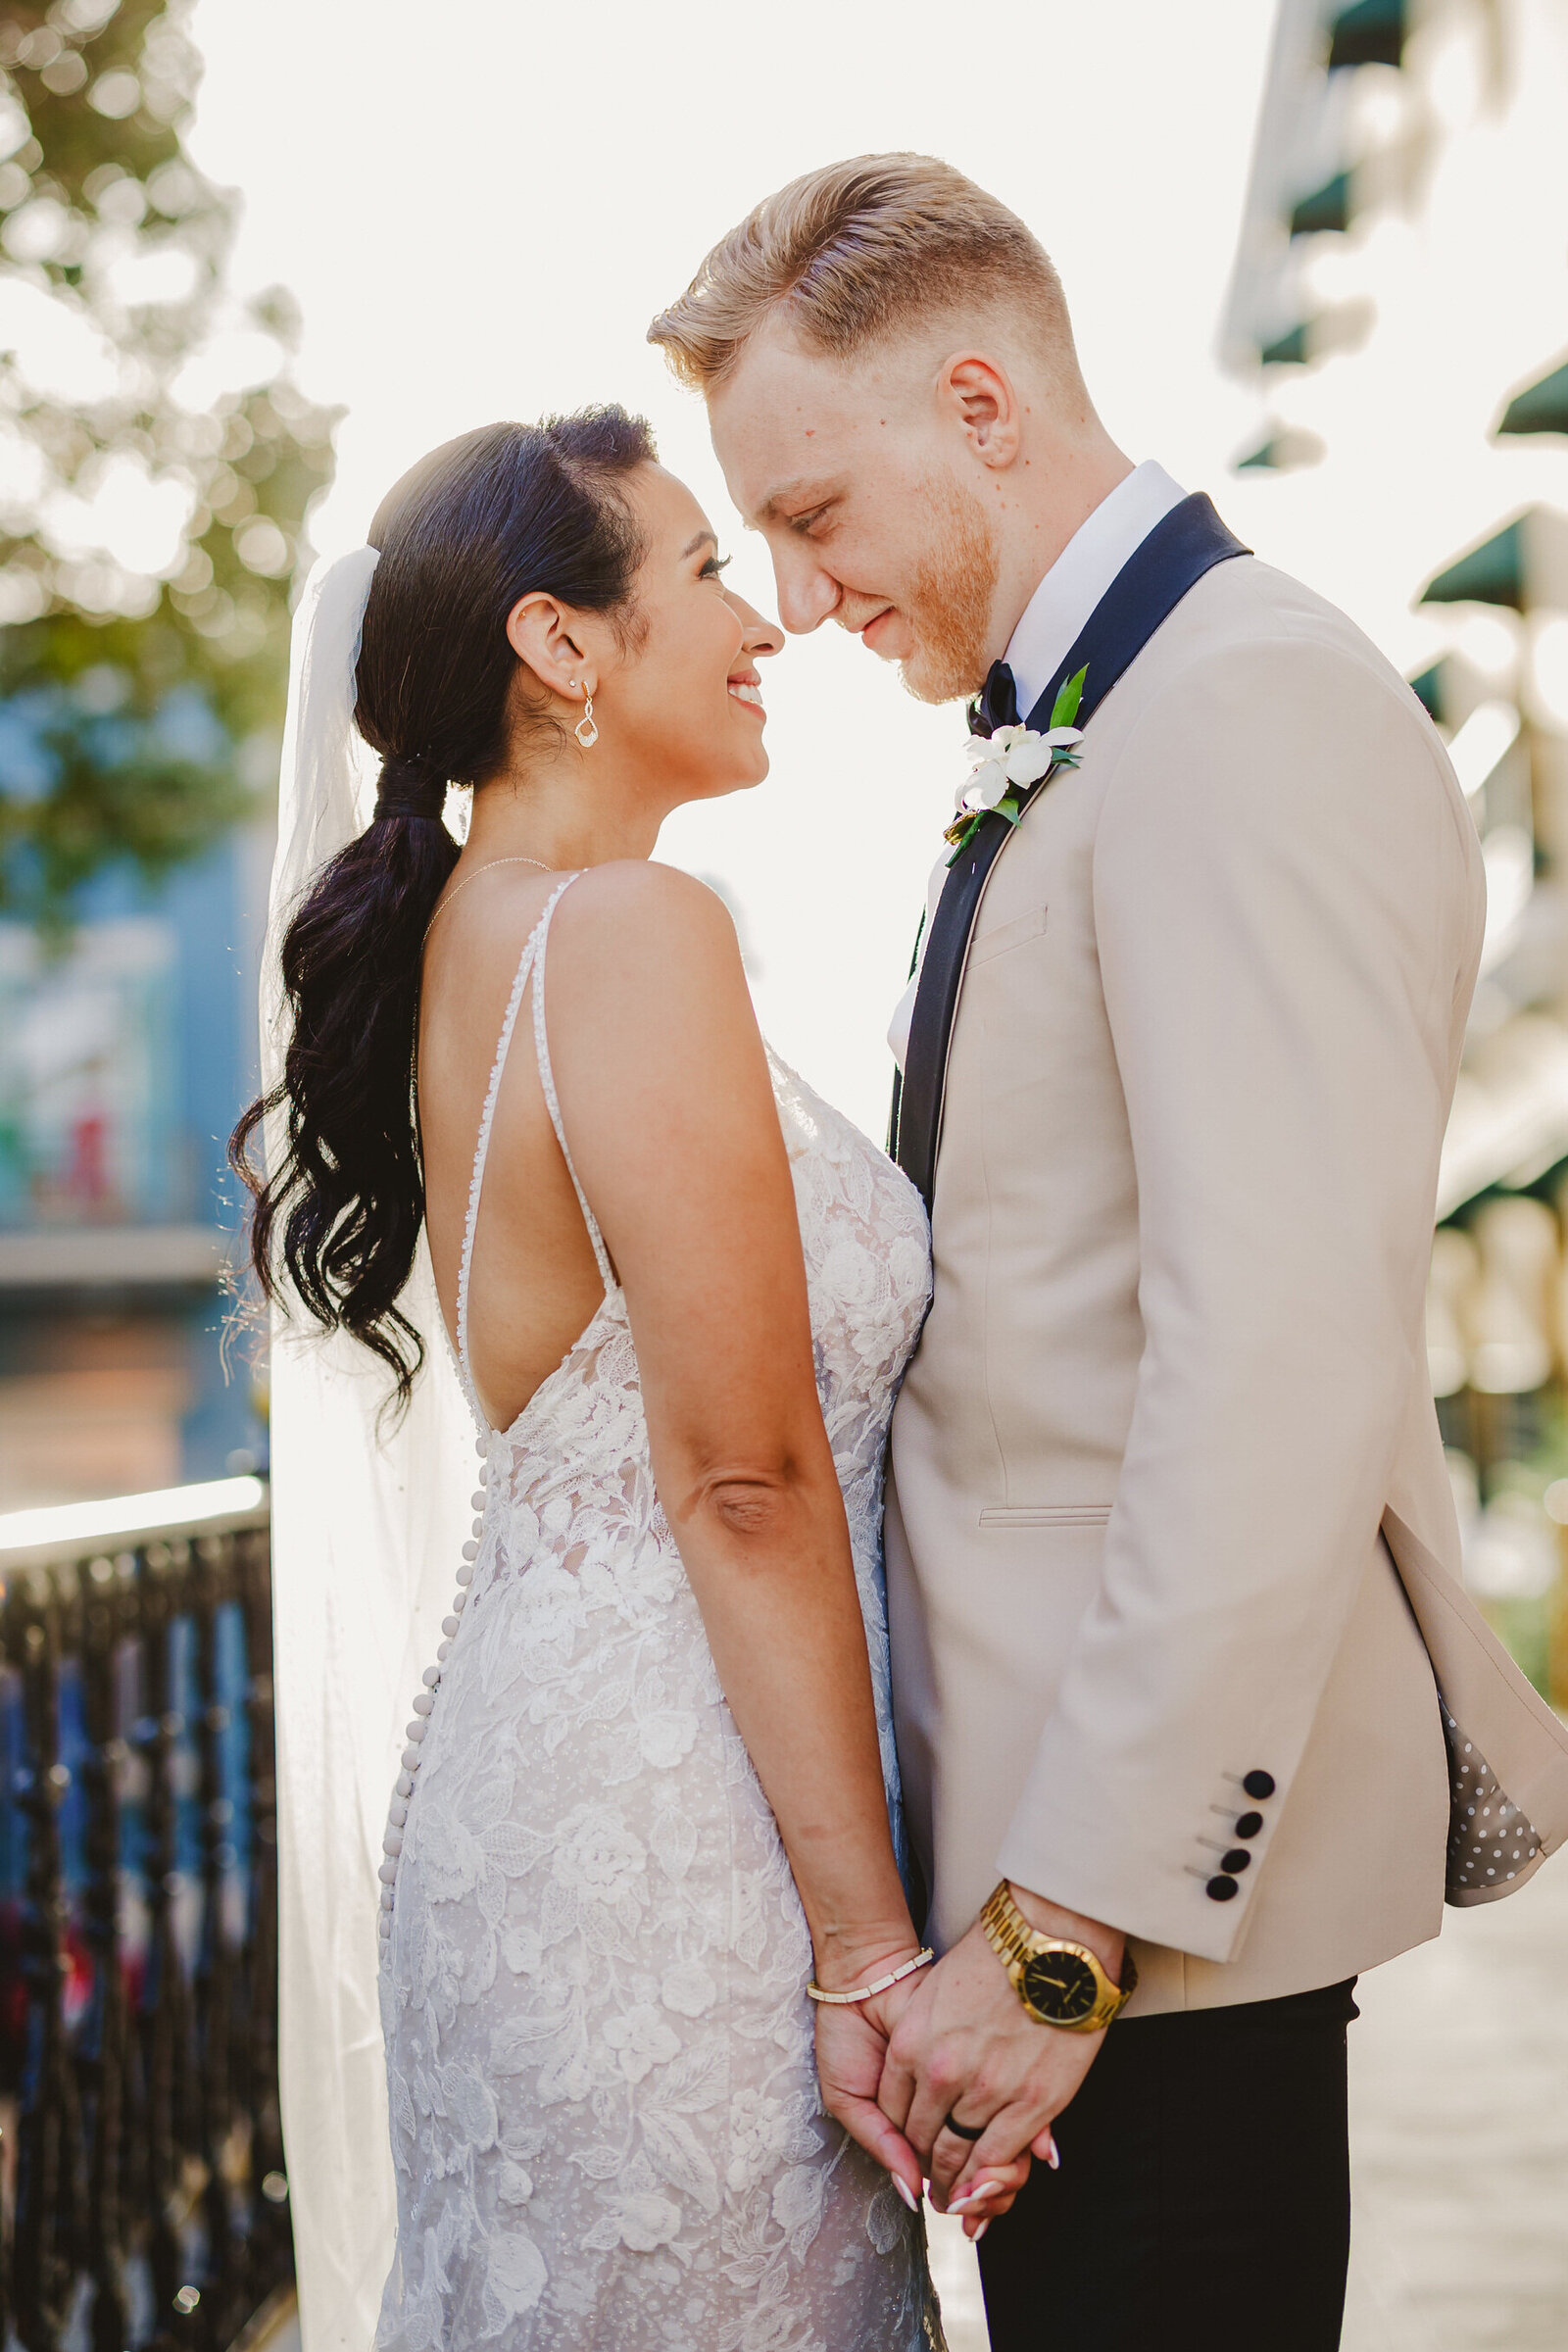 A bride and groom look into their eyes in front of El Convento Hotel, Old San Juan, Puerto Rico